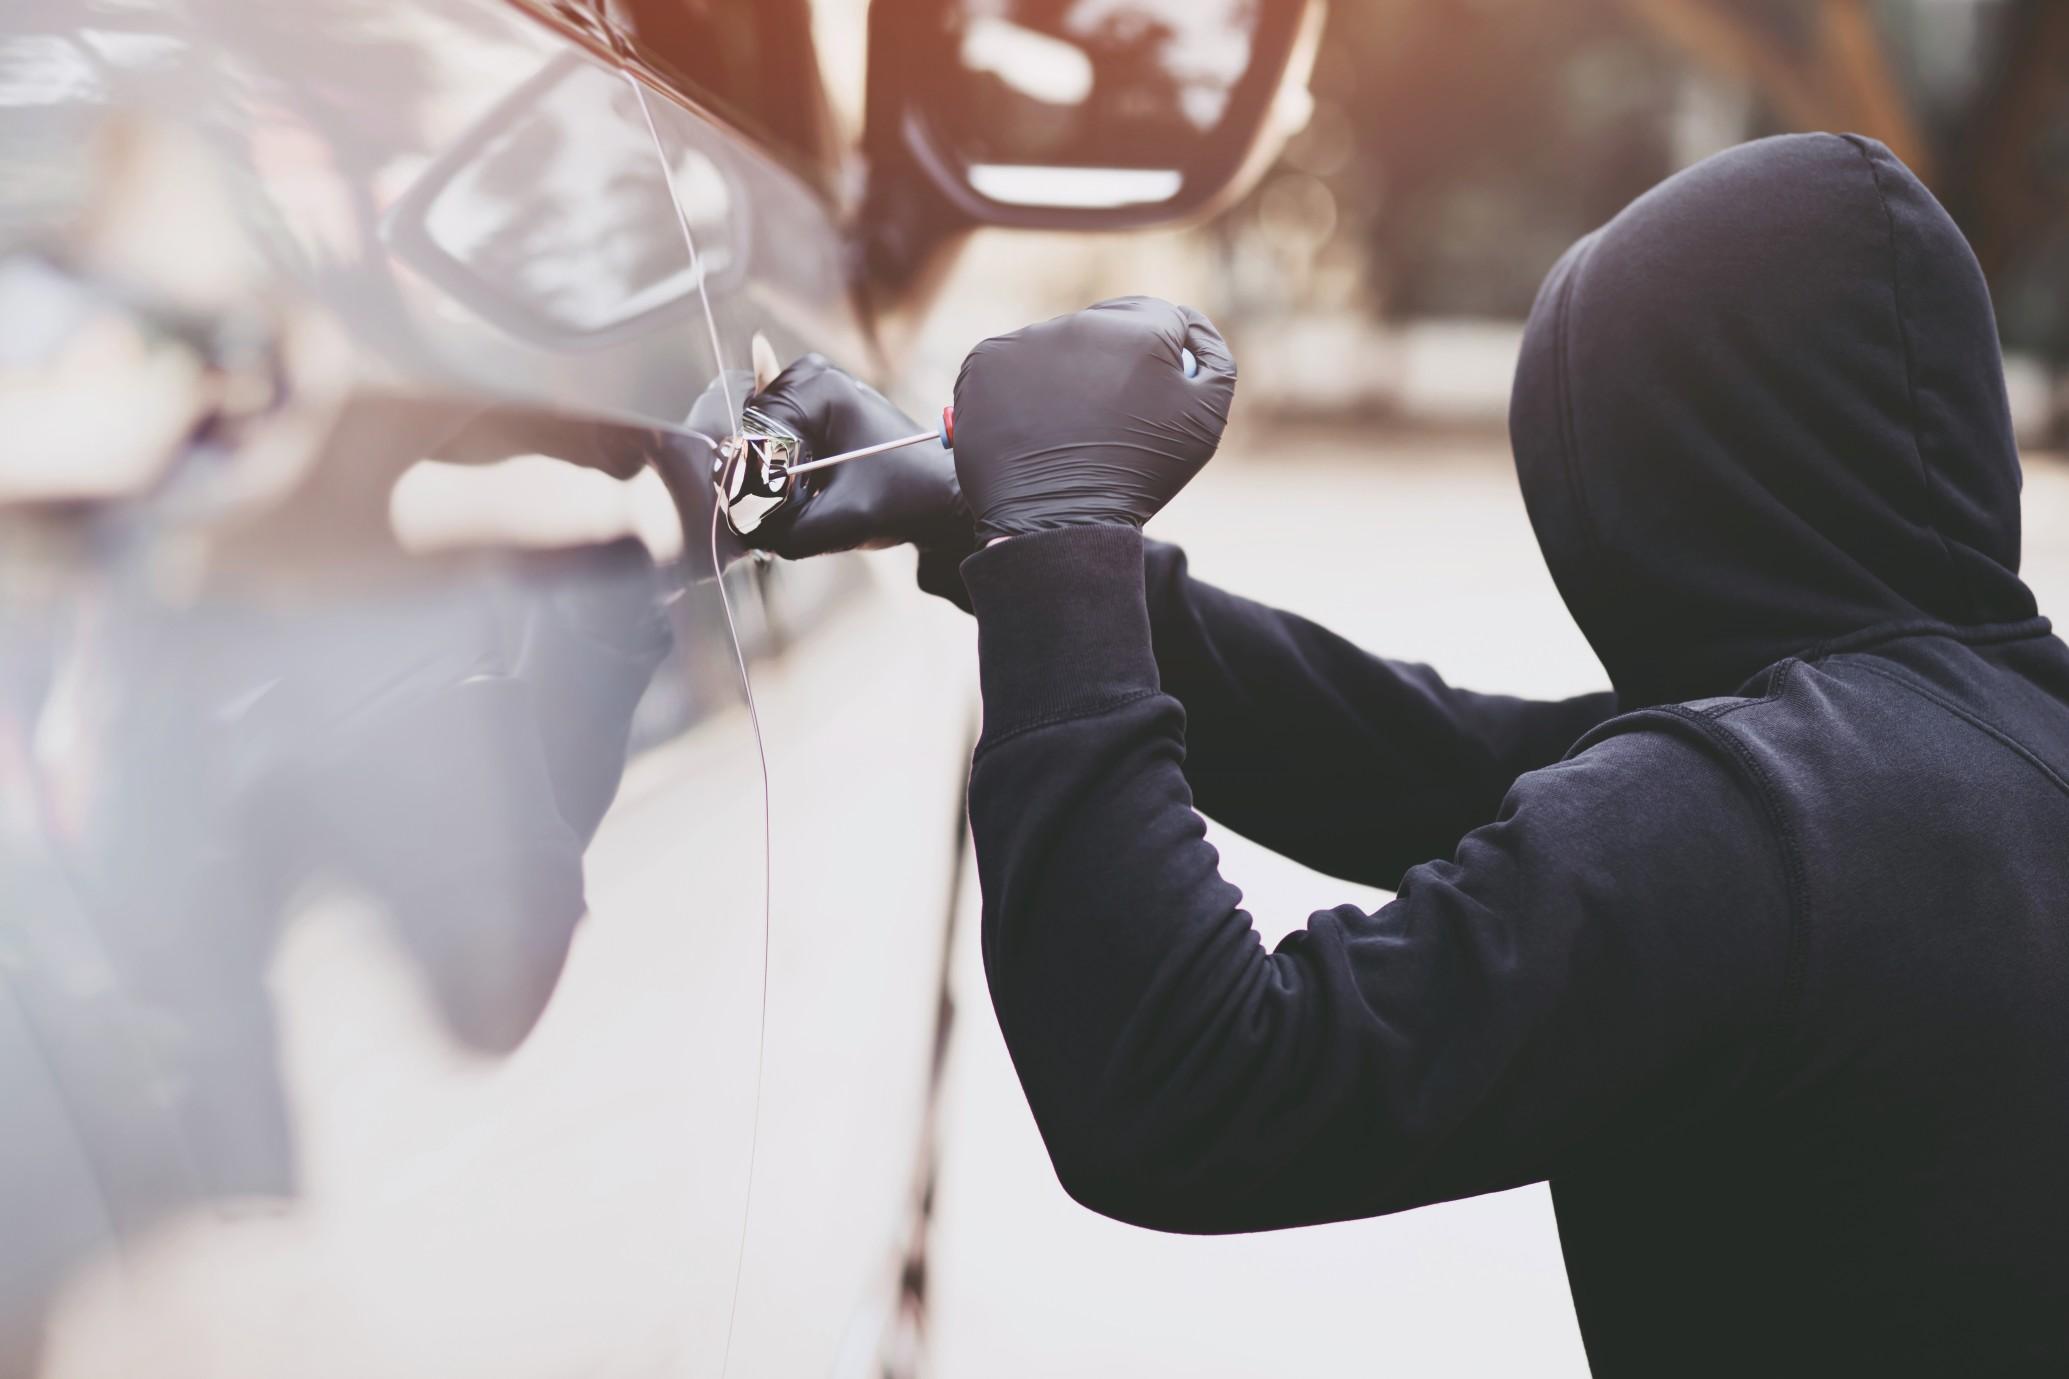 密歇根沙龙老板最近发现自己的汽车盗窃对抗。